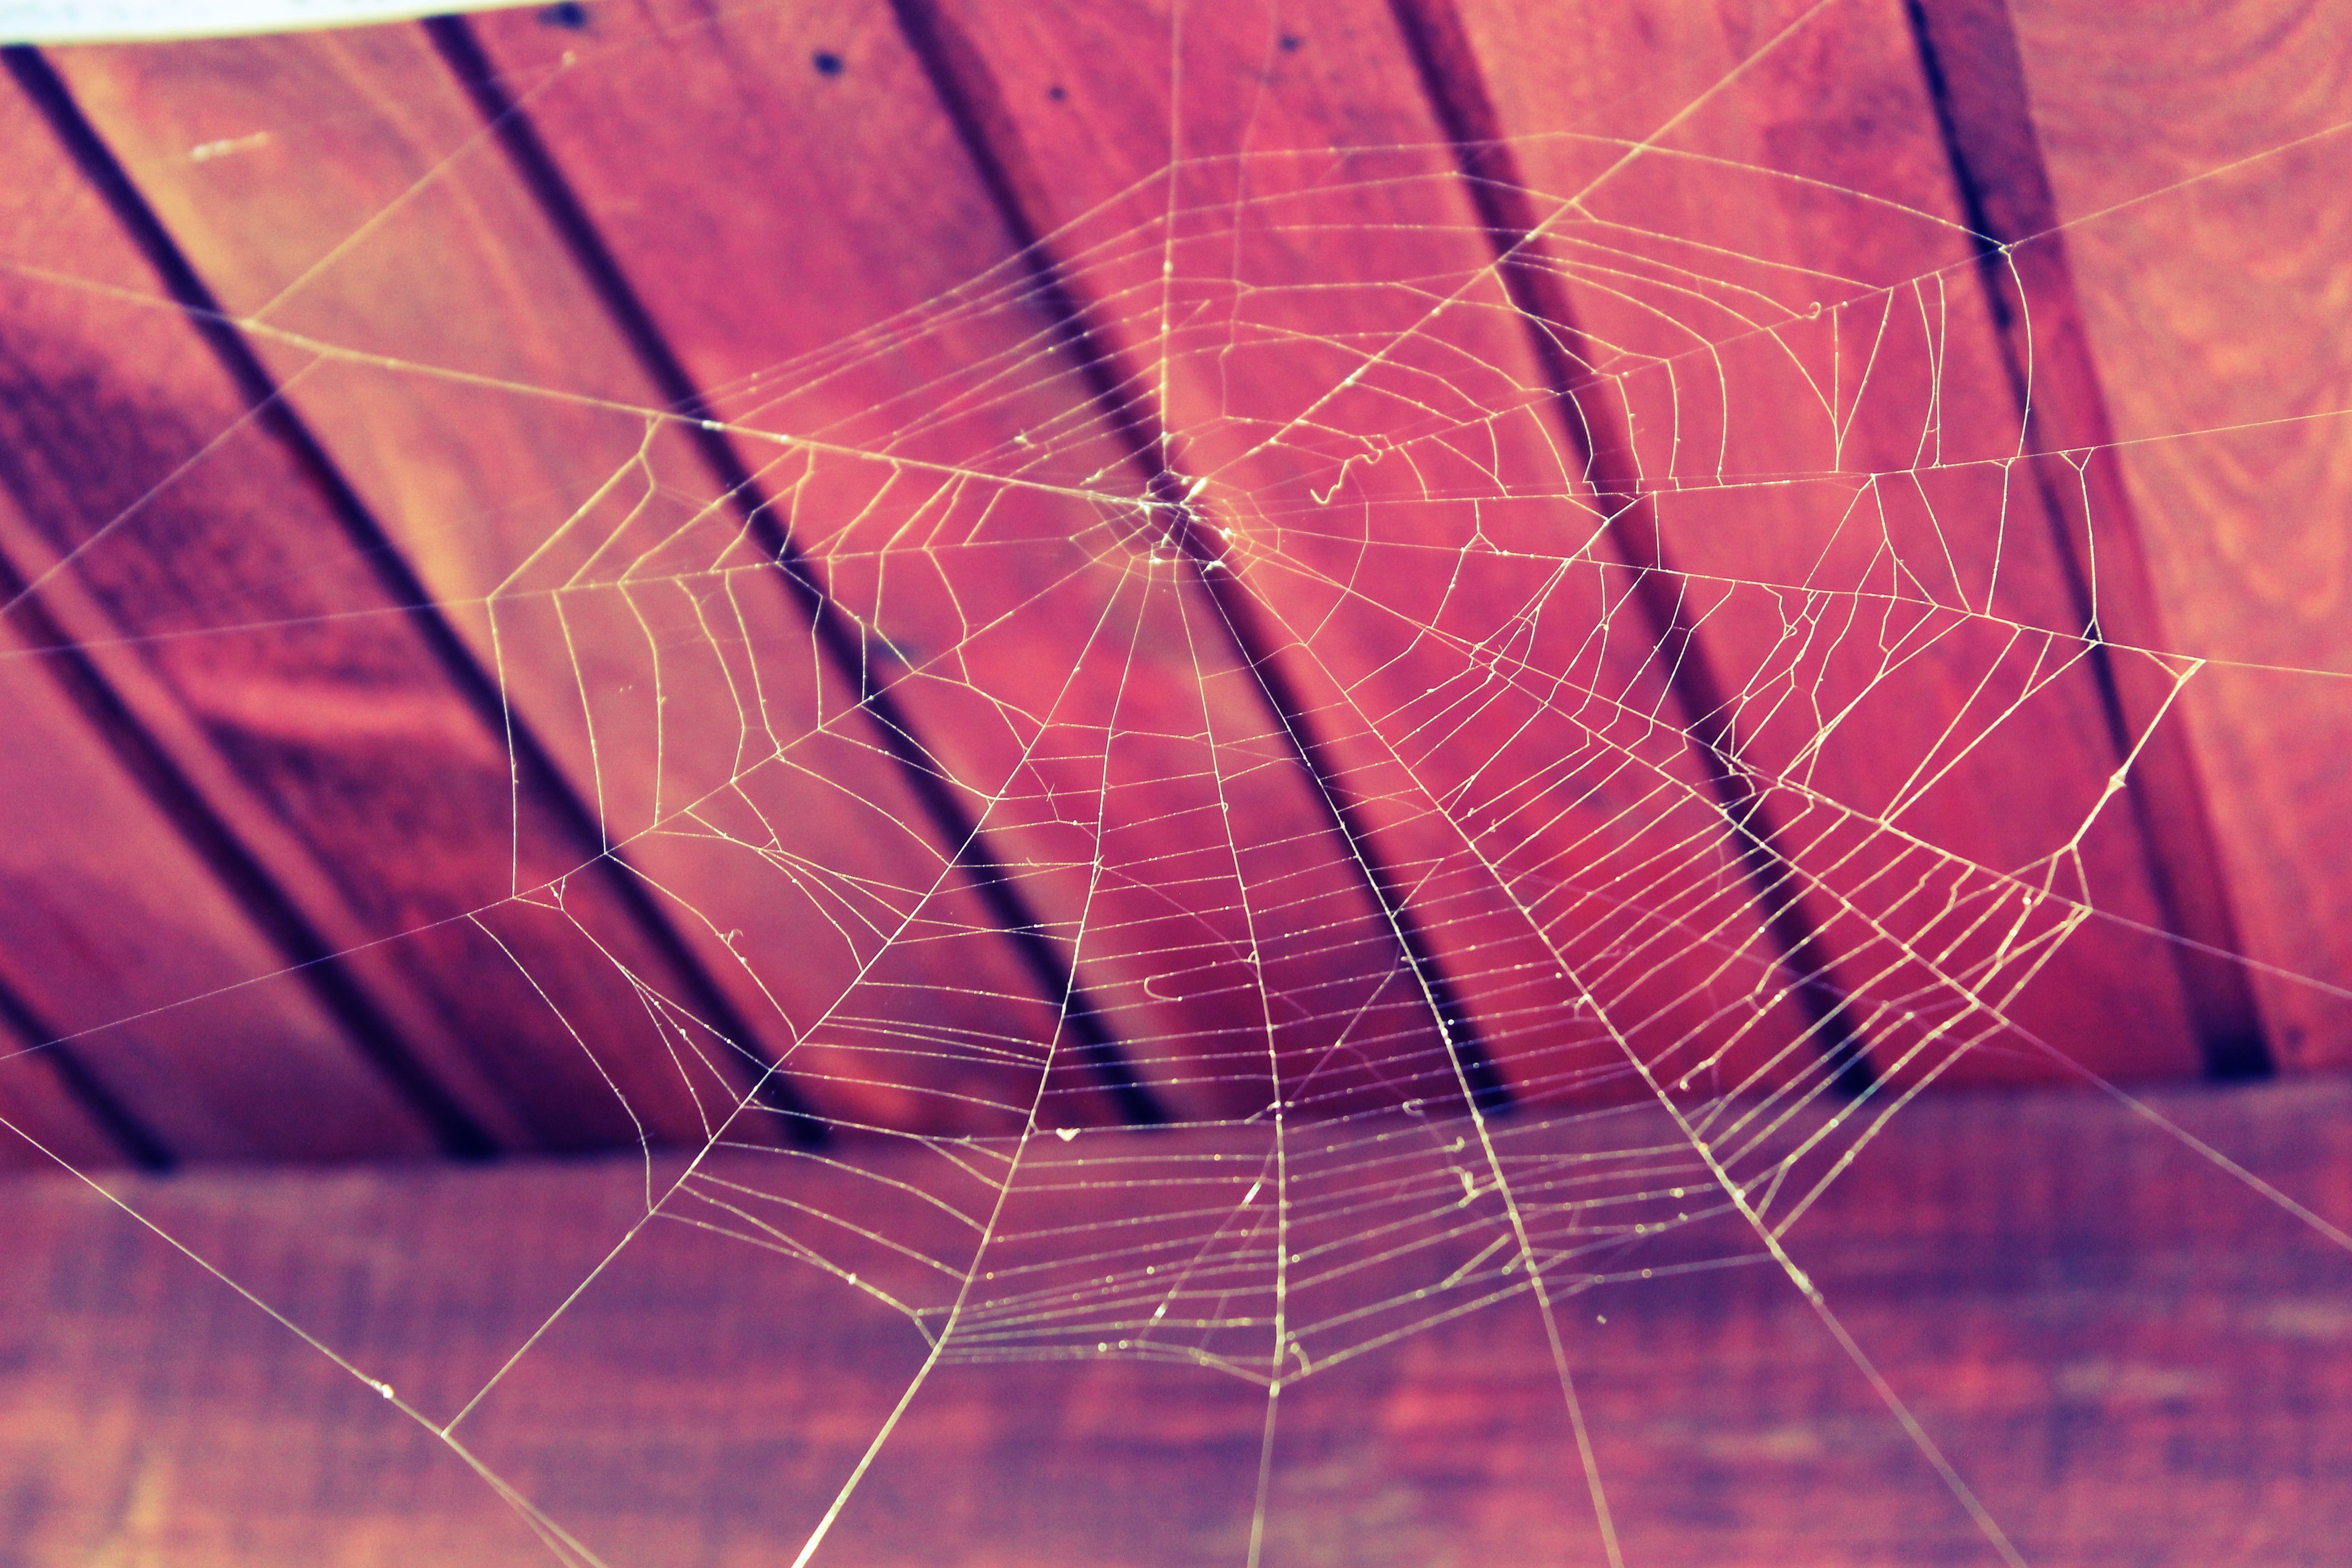 Nature, Cobweb, Web, Spider, Halloween, spider web, spider